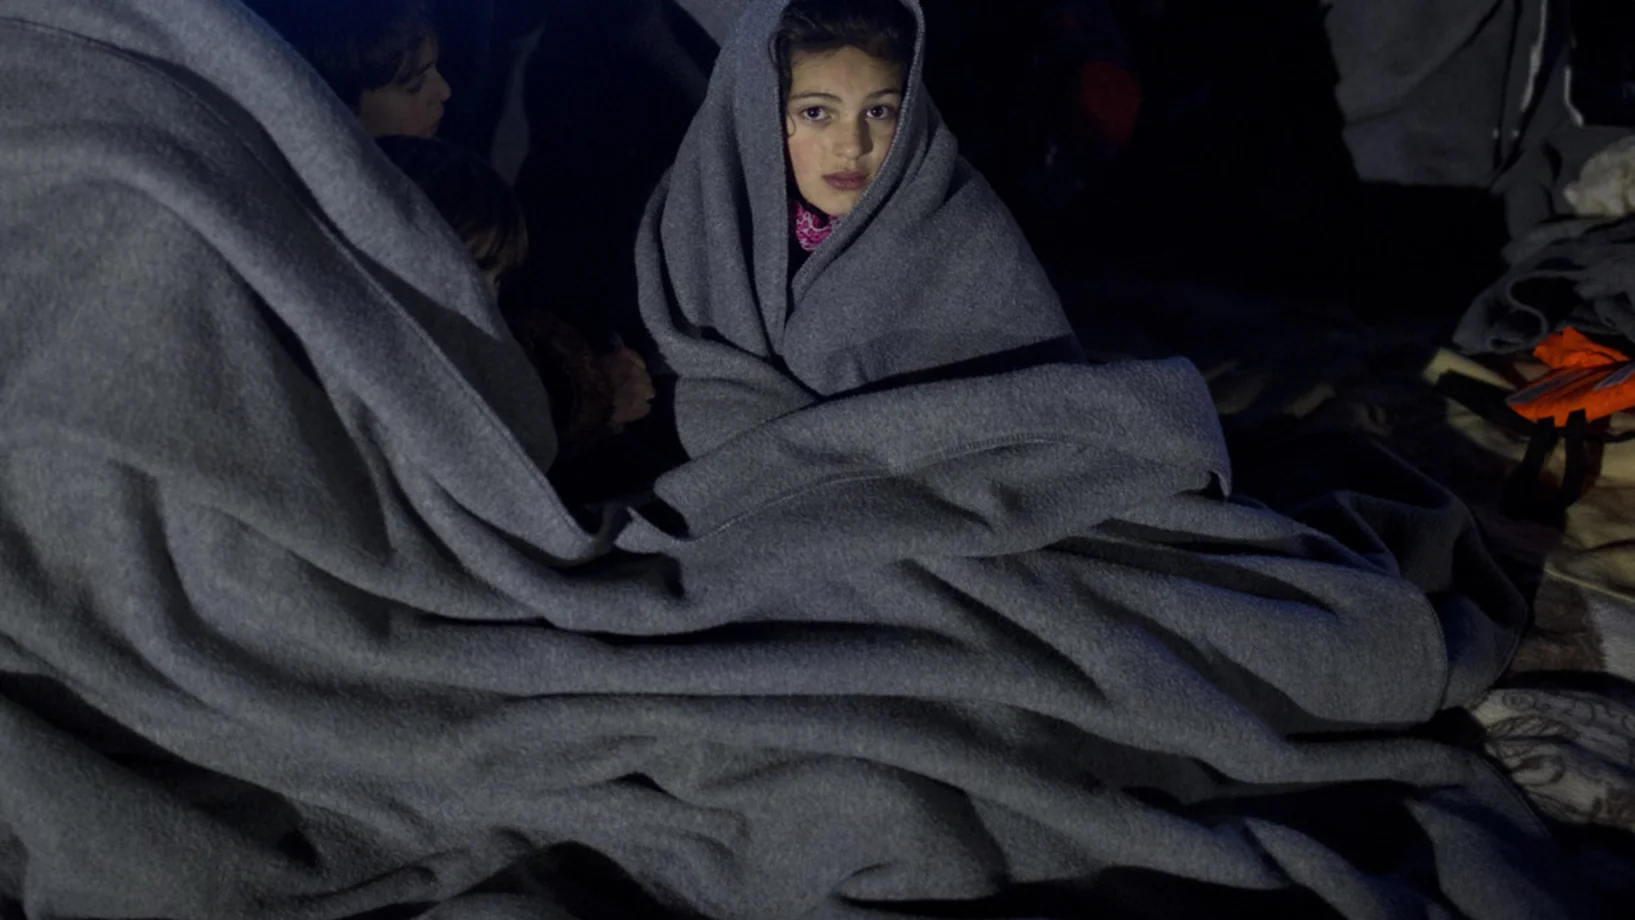 Dieses Flüchtlingsmädchen ist am Sonntag auf der griechischen Insel Lesbos angekommen. Zusammen mit ihrer Familie überquerte sie in einem überfüllten Boot von der Türkei kommend das Ägäische Meer. (Foto: Keystone/AP/Petros Giannakouris)